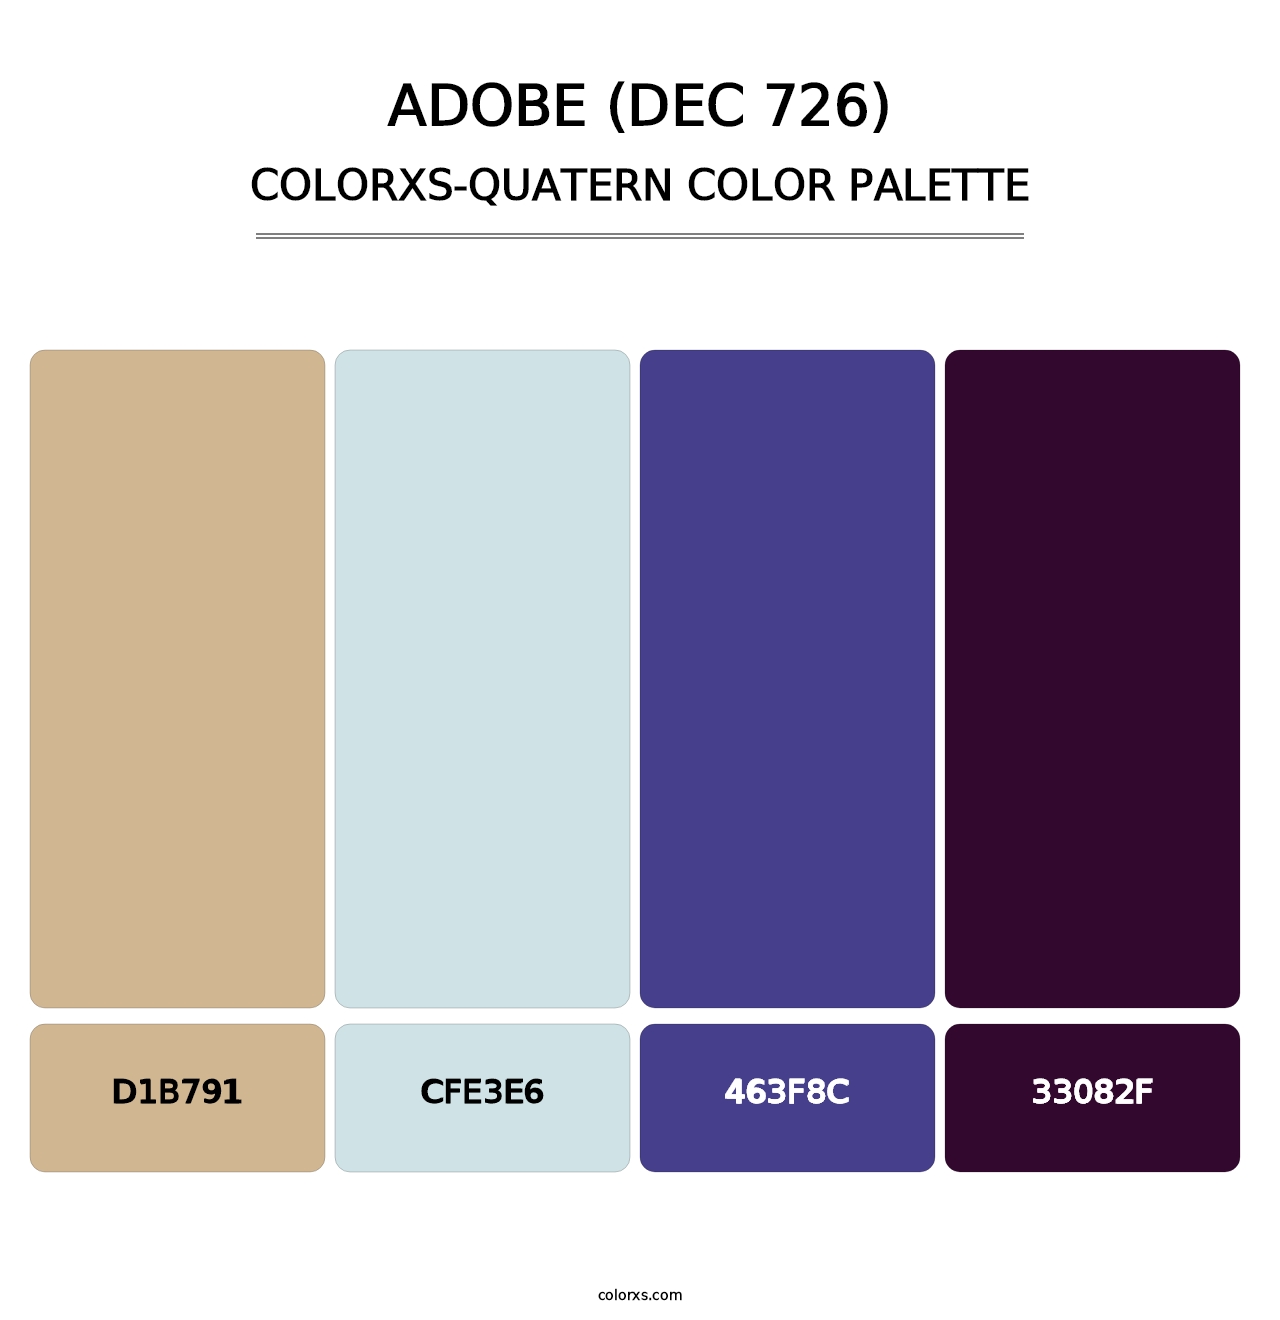 Adobe (DEC 726) - Colorxs Quatern Palette